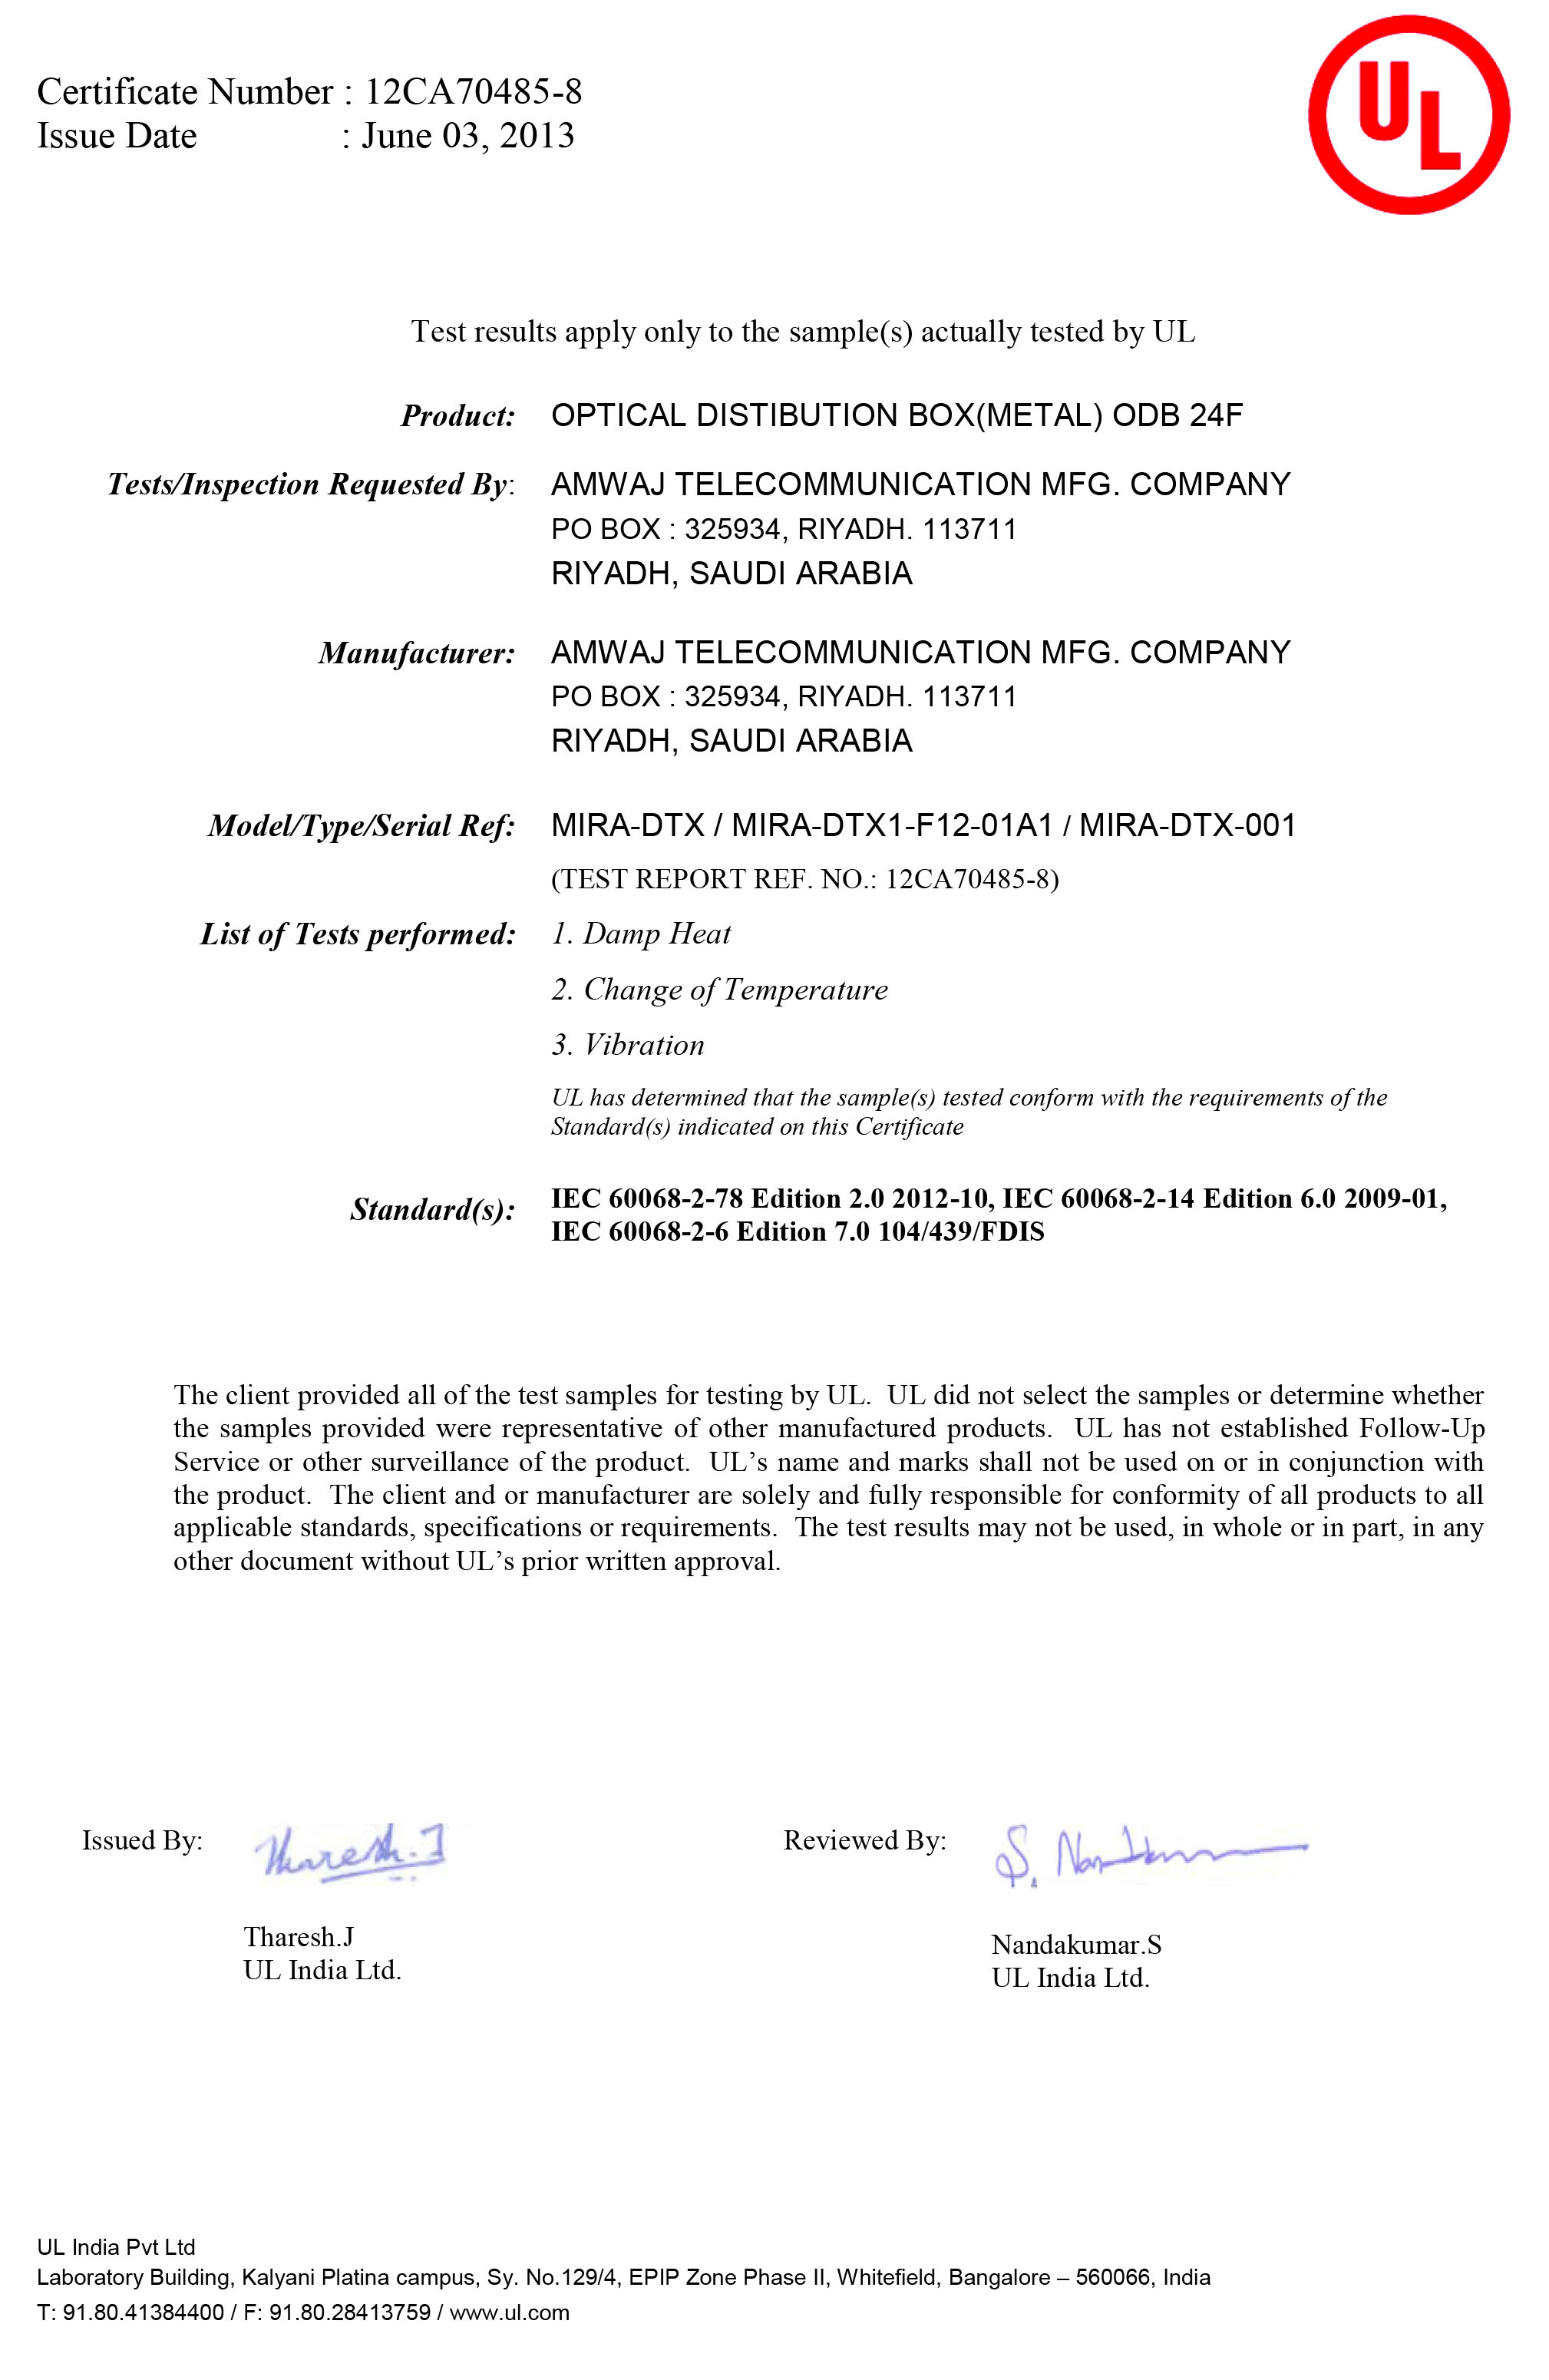 UL Certificate for ODB 24F(Metal)